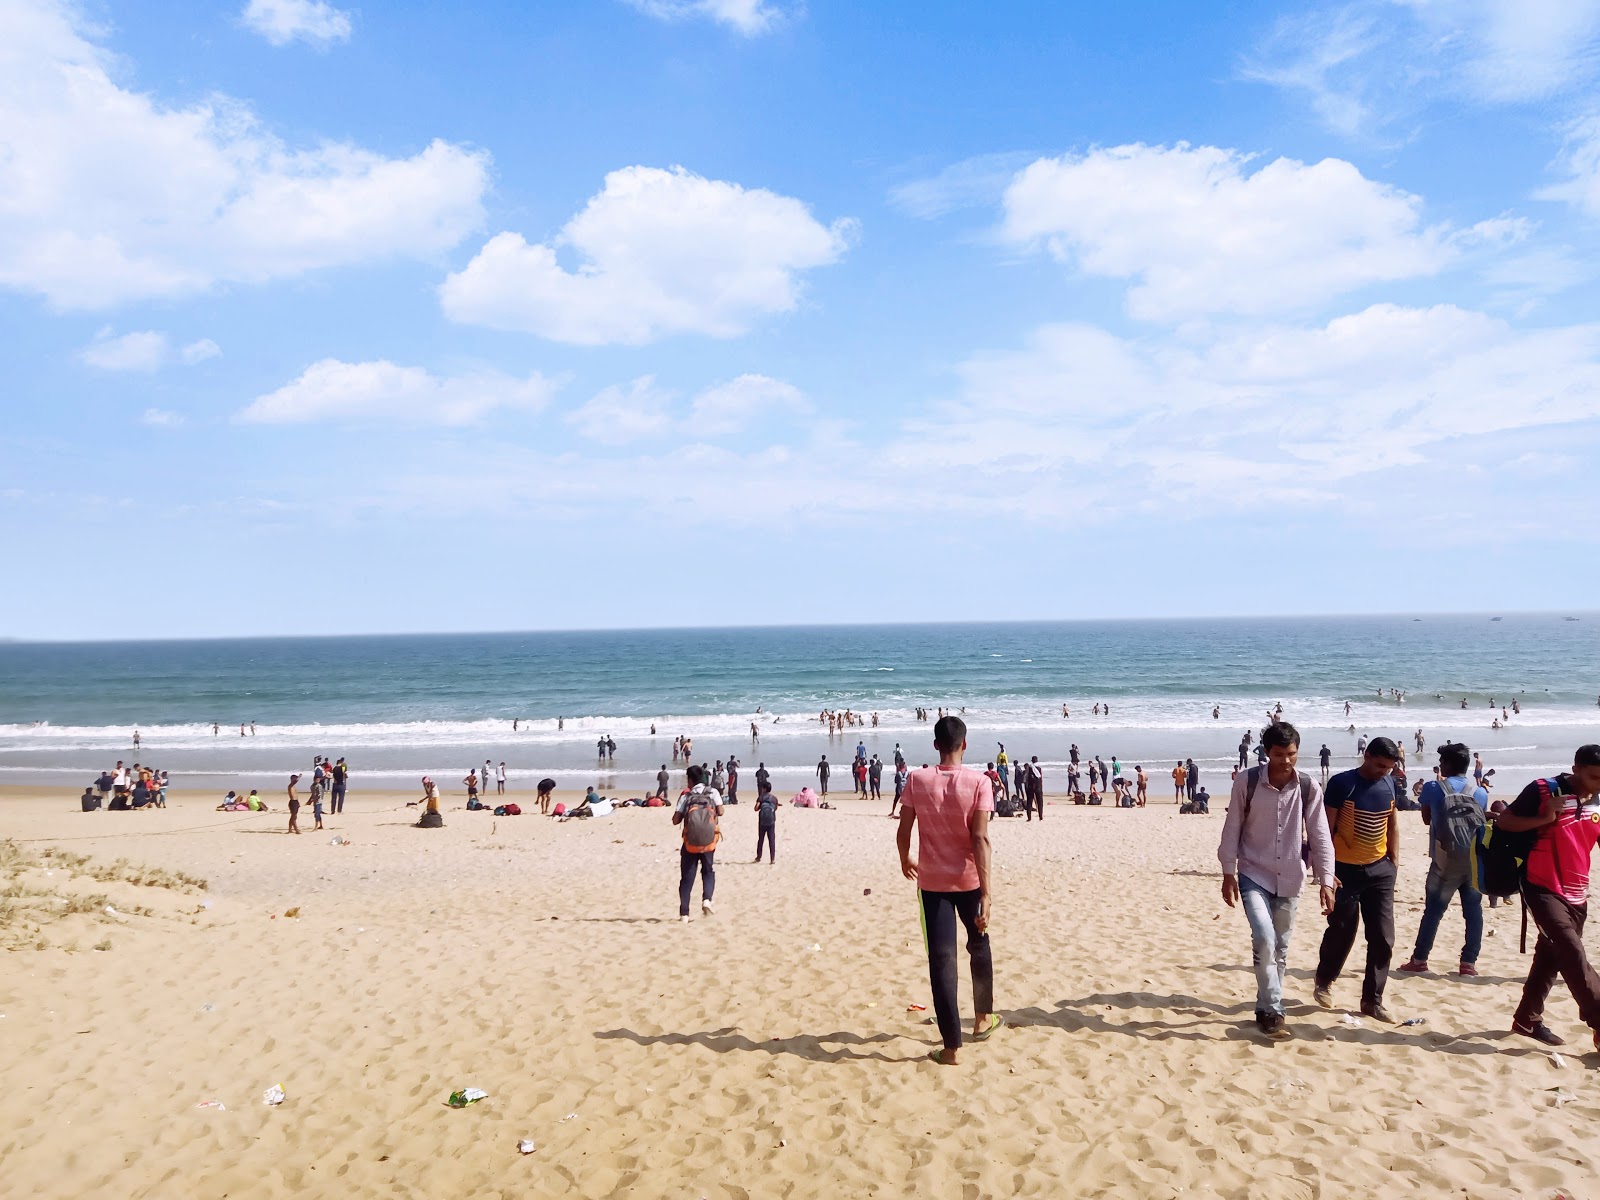 Dhabaleshwar Beach'in fotoğrafı parlak kum yüzey ile